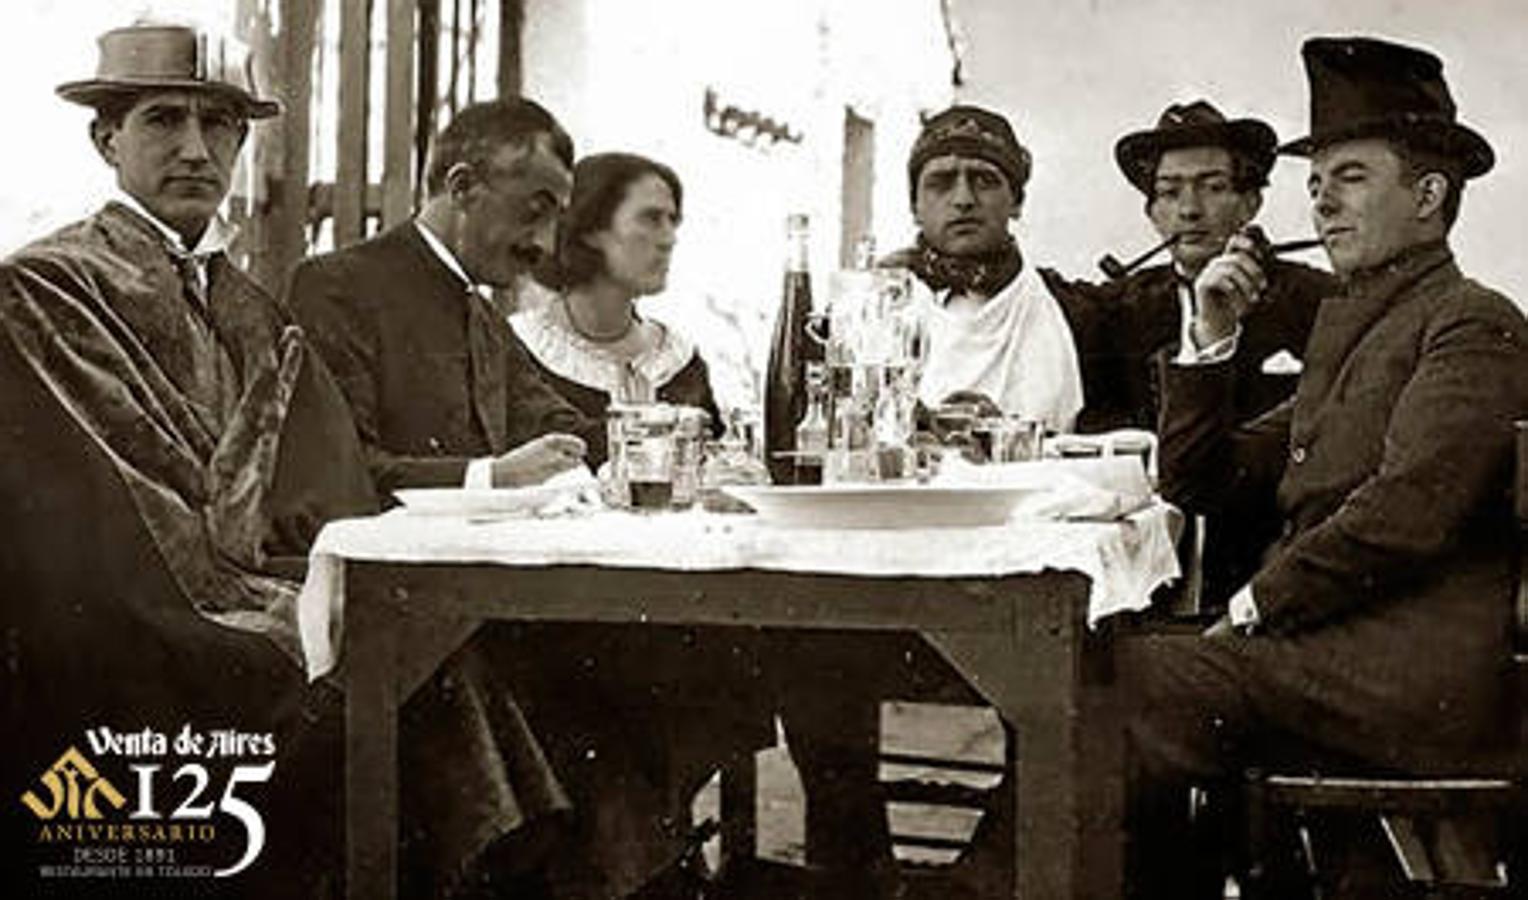 Una reunión de la Orden de Toledo en la Venta de Aires. De izquierda a derecha, Pepín Bello, José M. Villa, María Luisa González, Luis Buñuel, Salvadord Dalí y José María Hinojosa